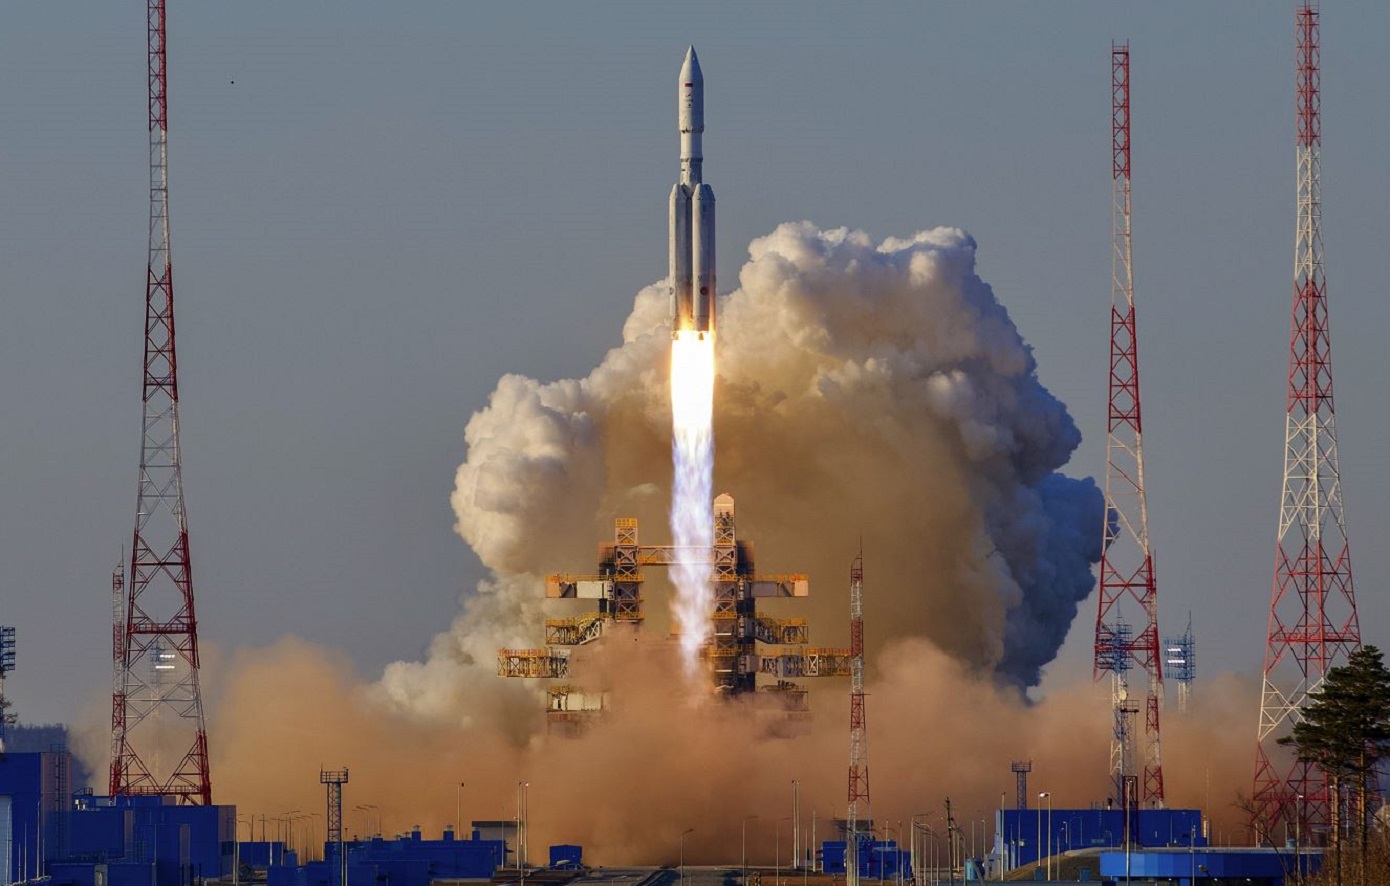 Βίντεο με την εκτόξευση του διαστημικού πυραύλου Angara-A5